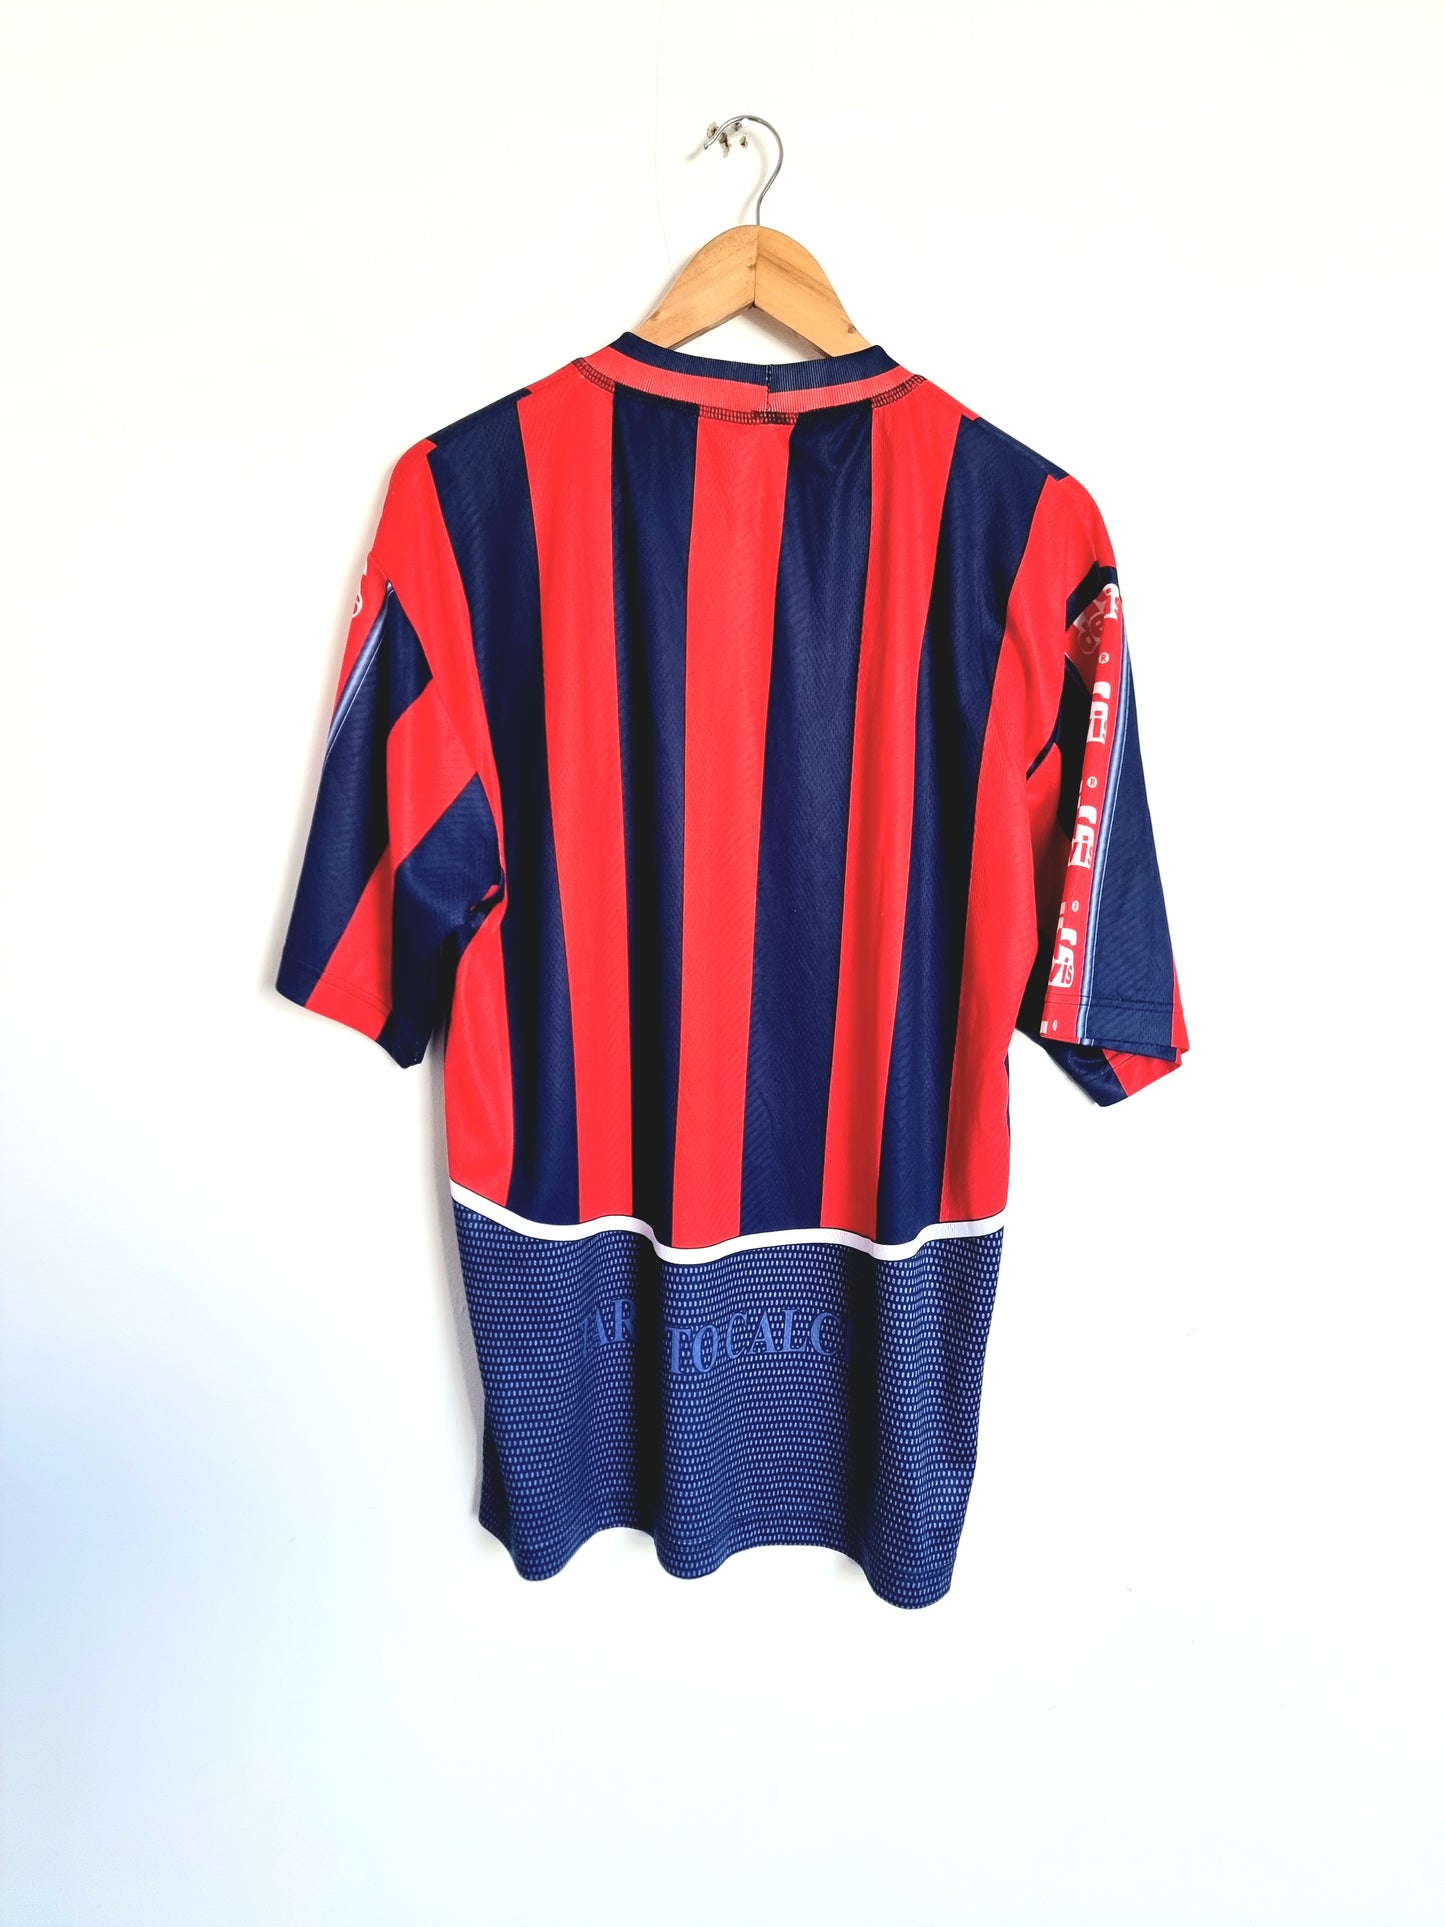 Devis Taranto Calcio 02/03 Home Shirt XL